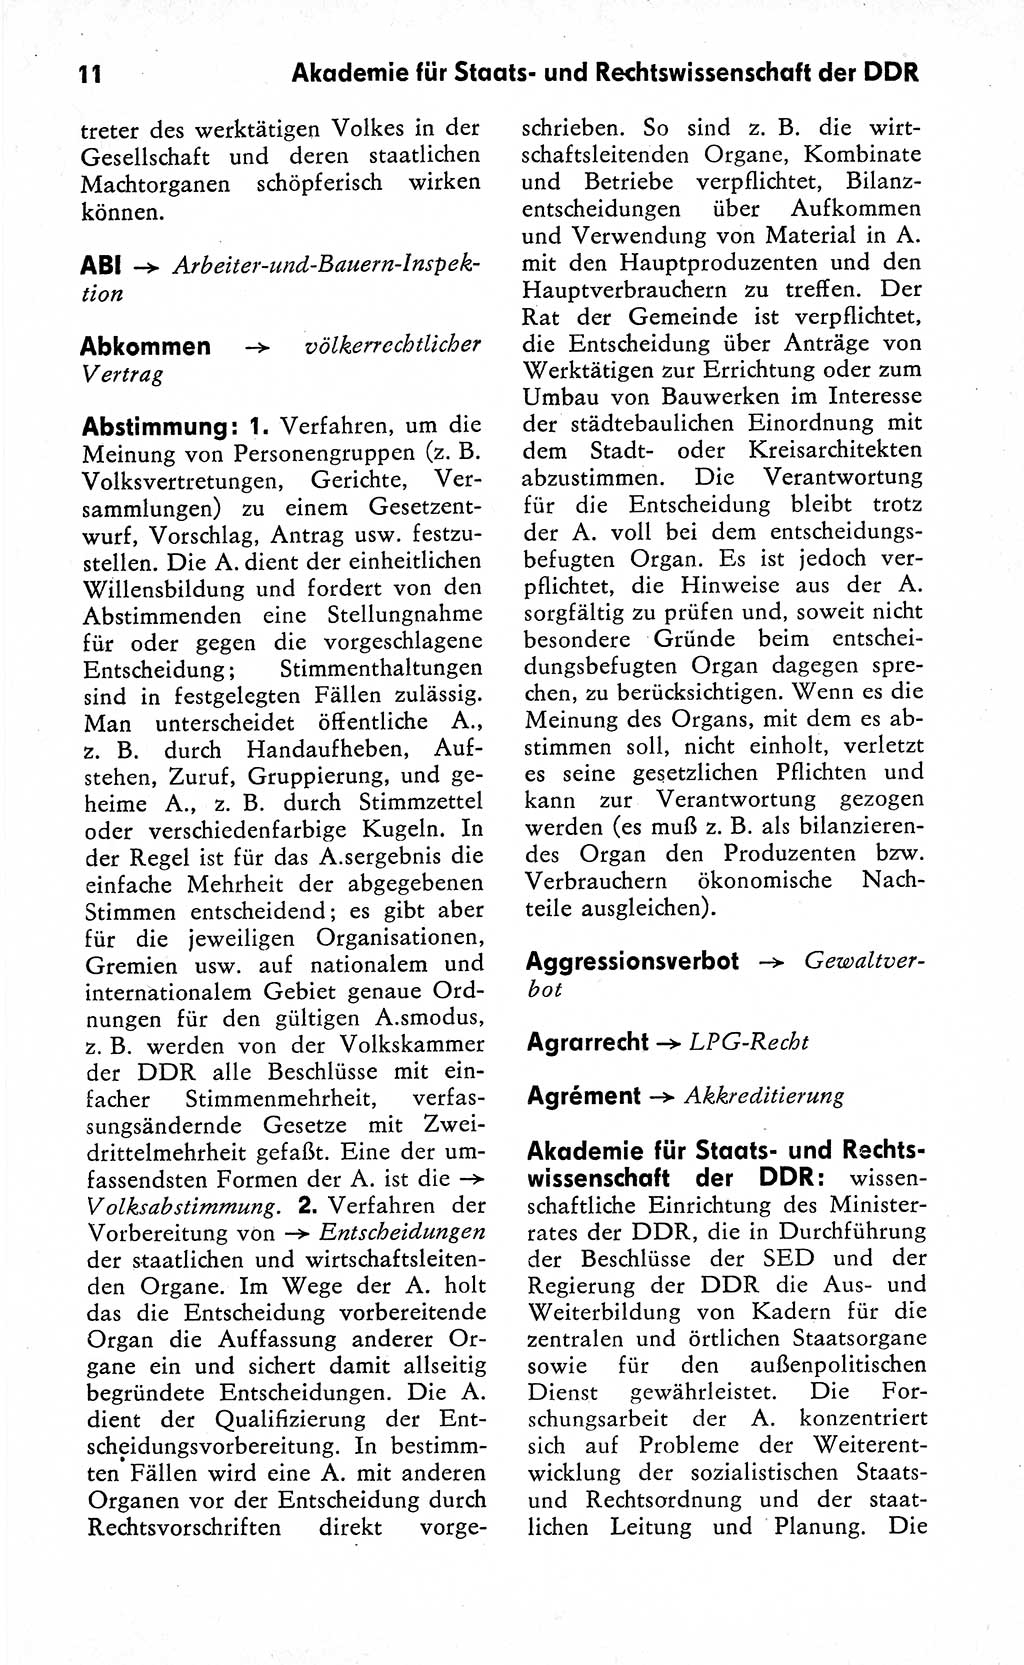 Wörterbuch zum sozialistischen Staat [Deutsche Demokratische Republik (DDR)] 1974, Seite 11 (Wb. soz. St. DDR 1974, S. 11)